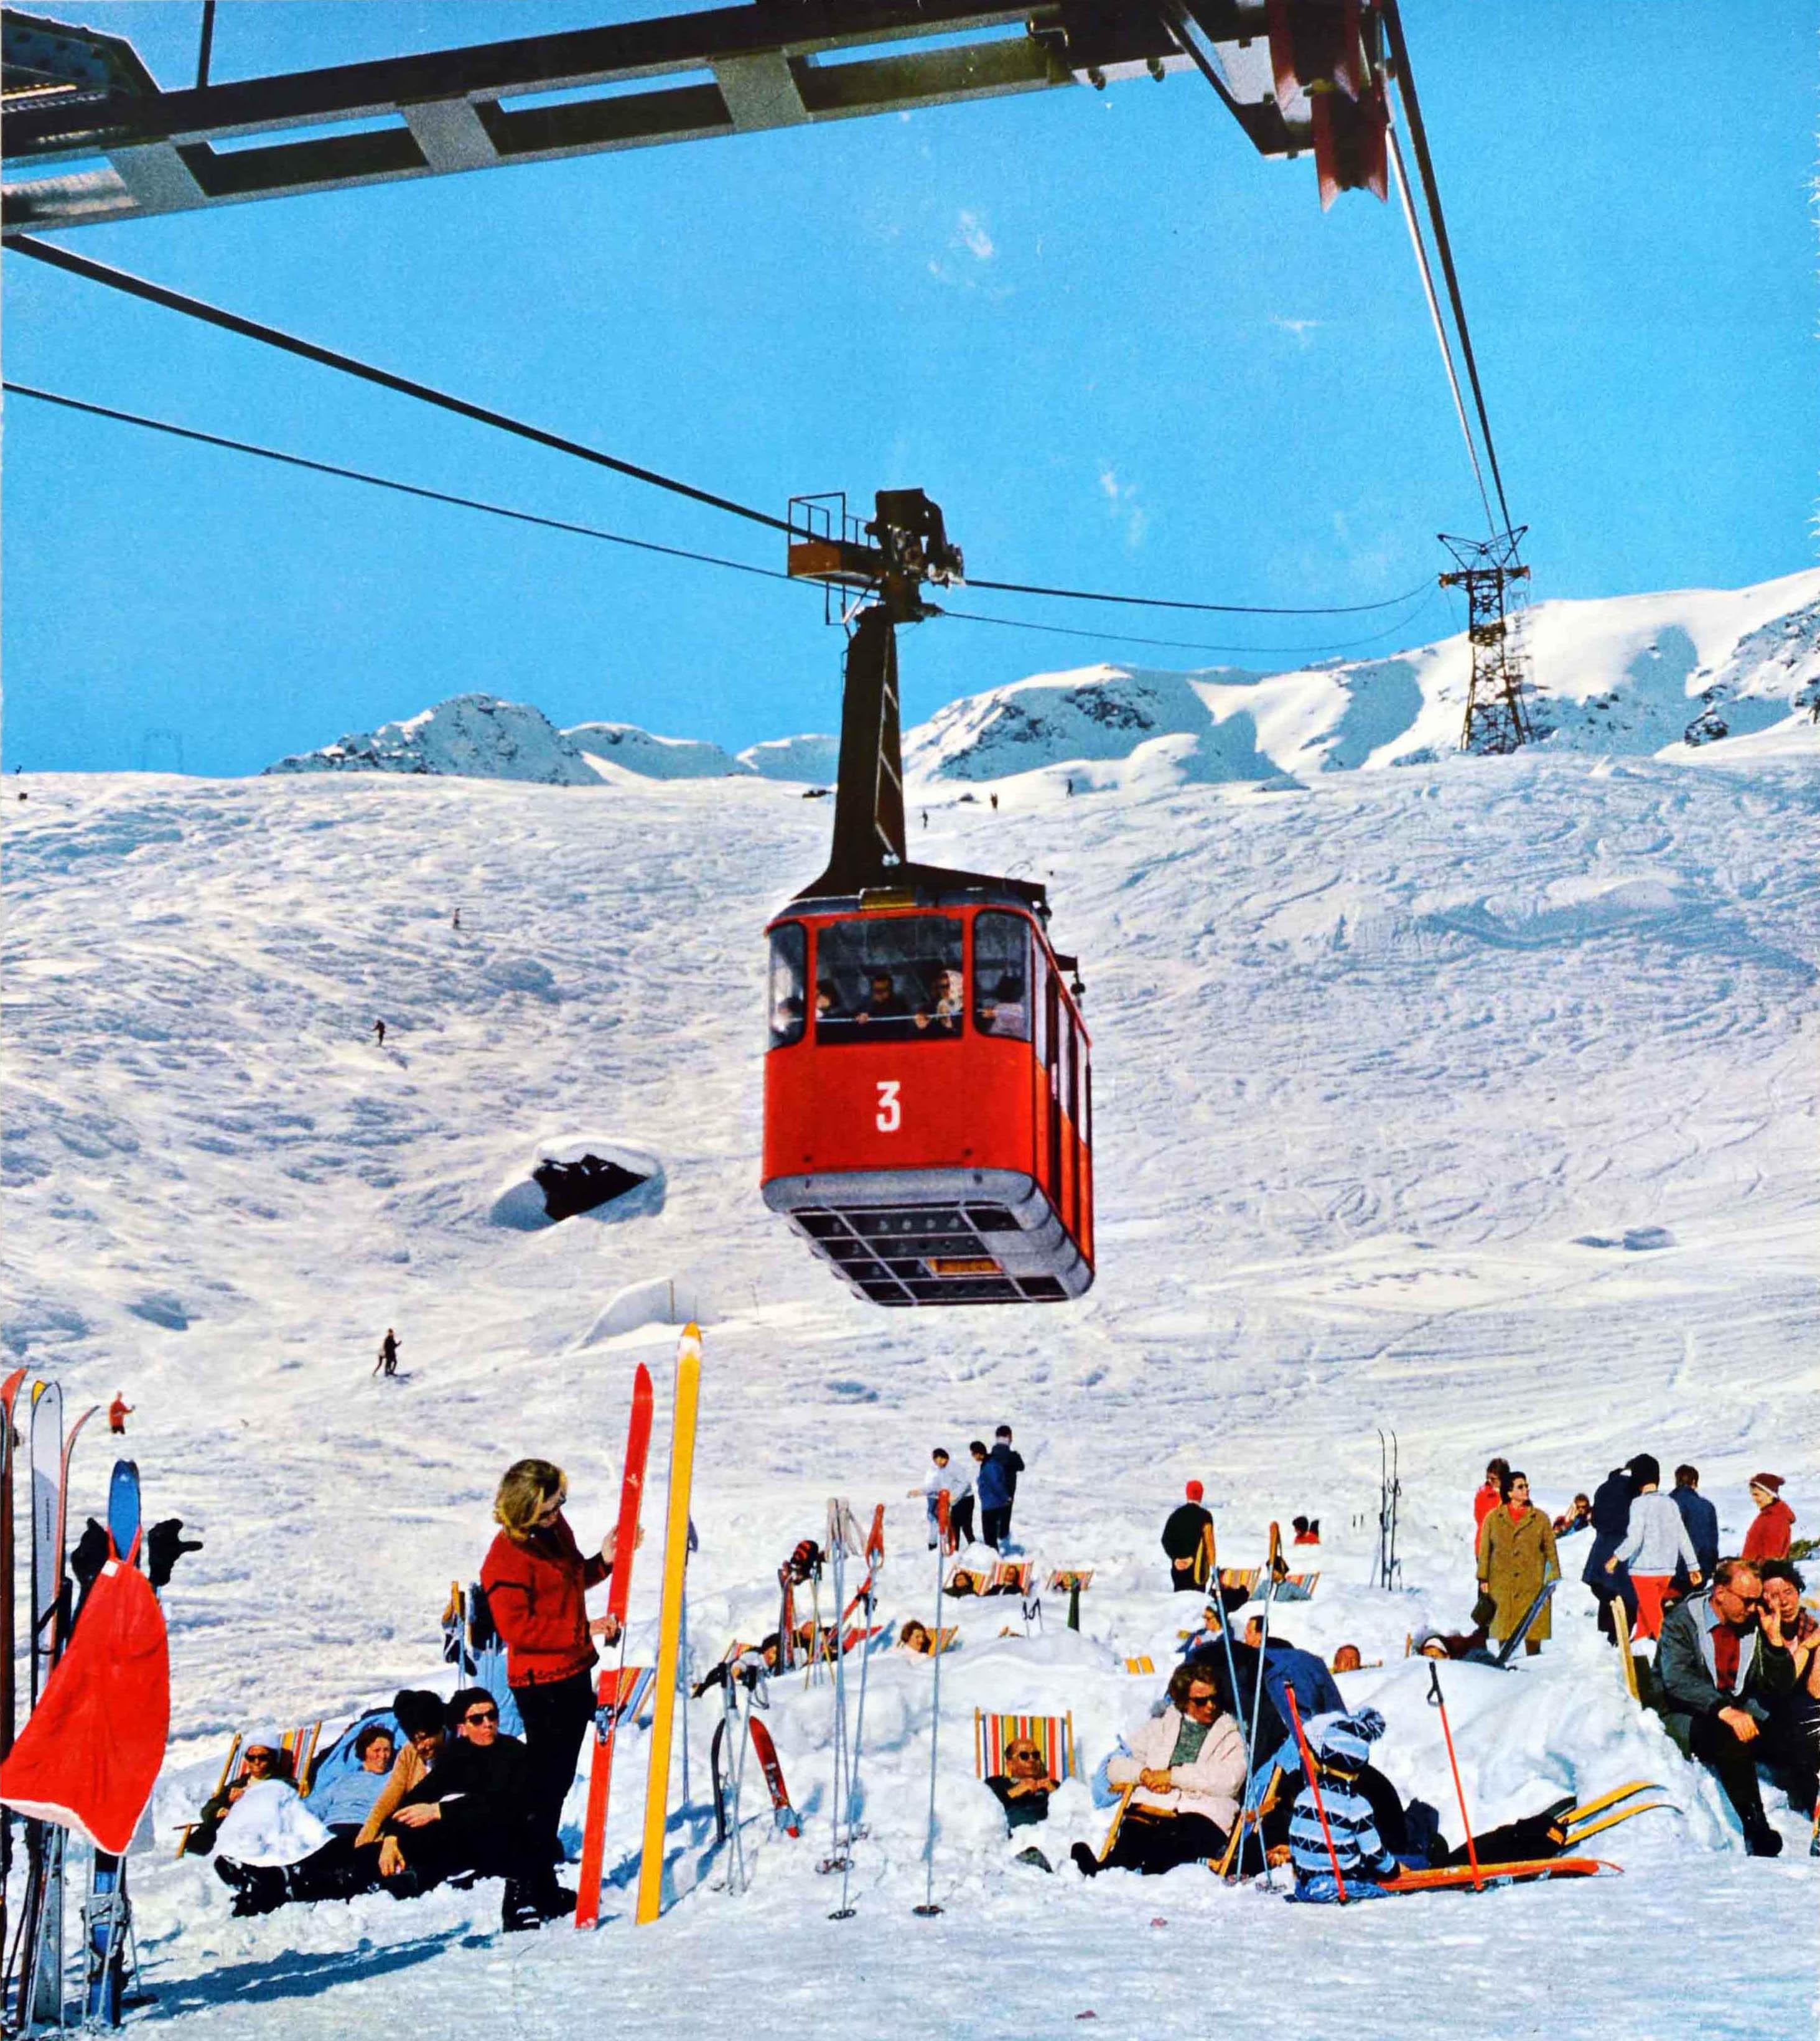 retro ski lift